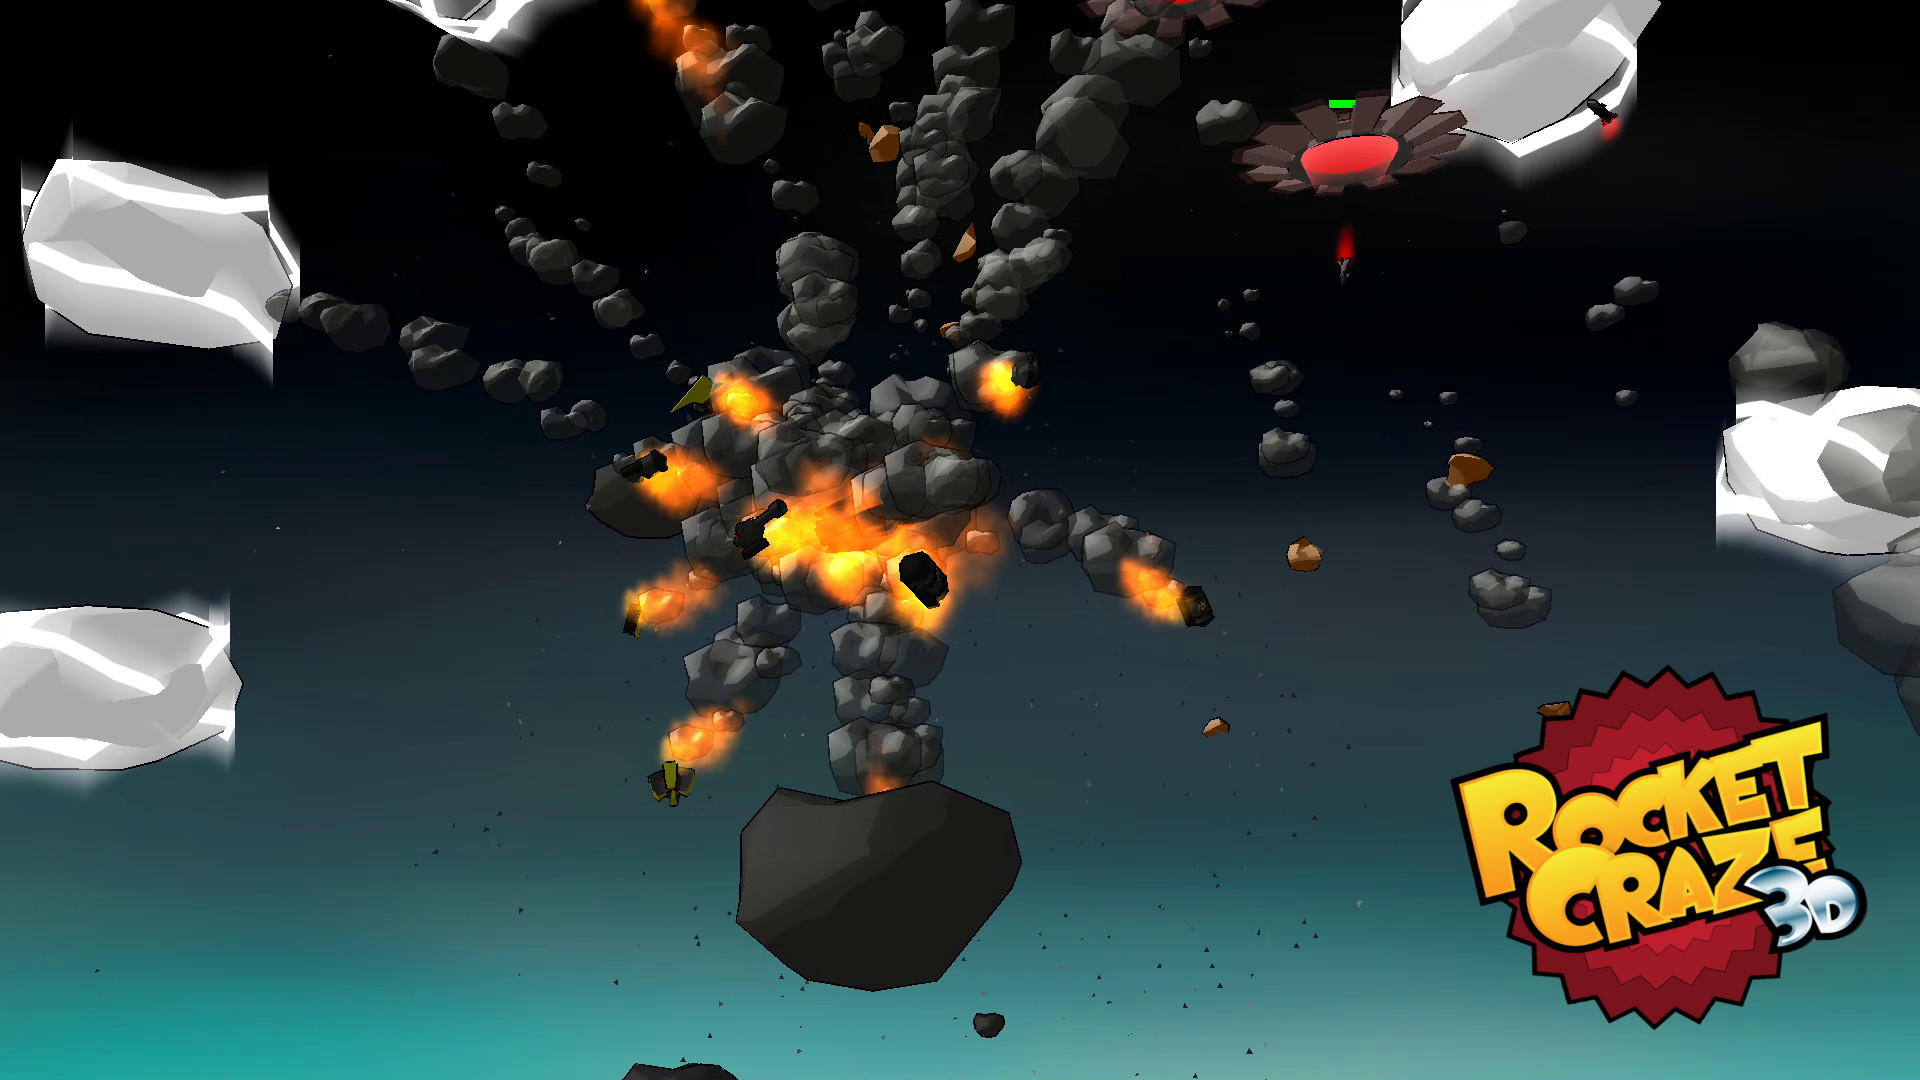 Rocket Craze 3D screenshot